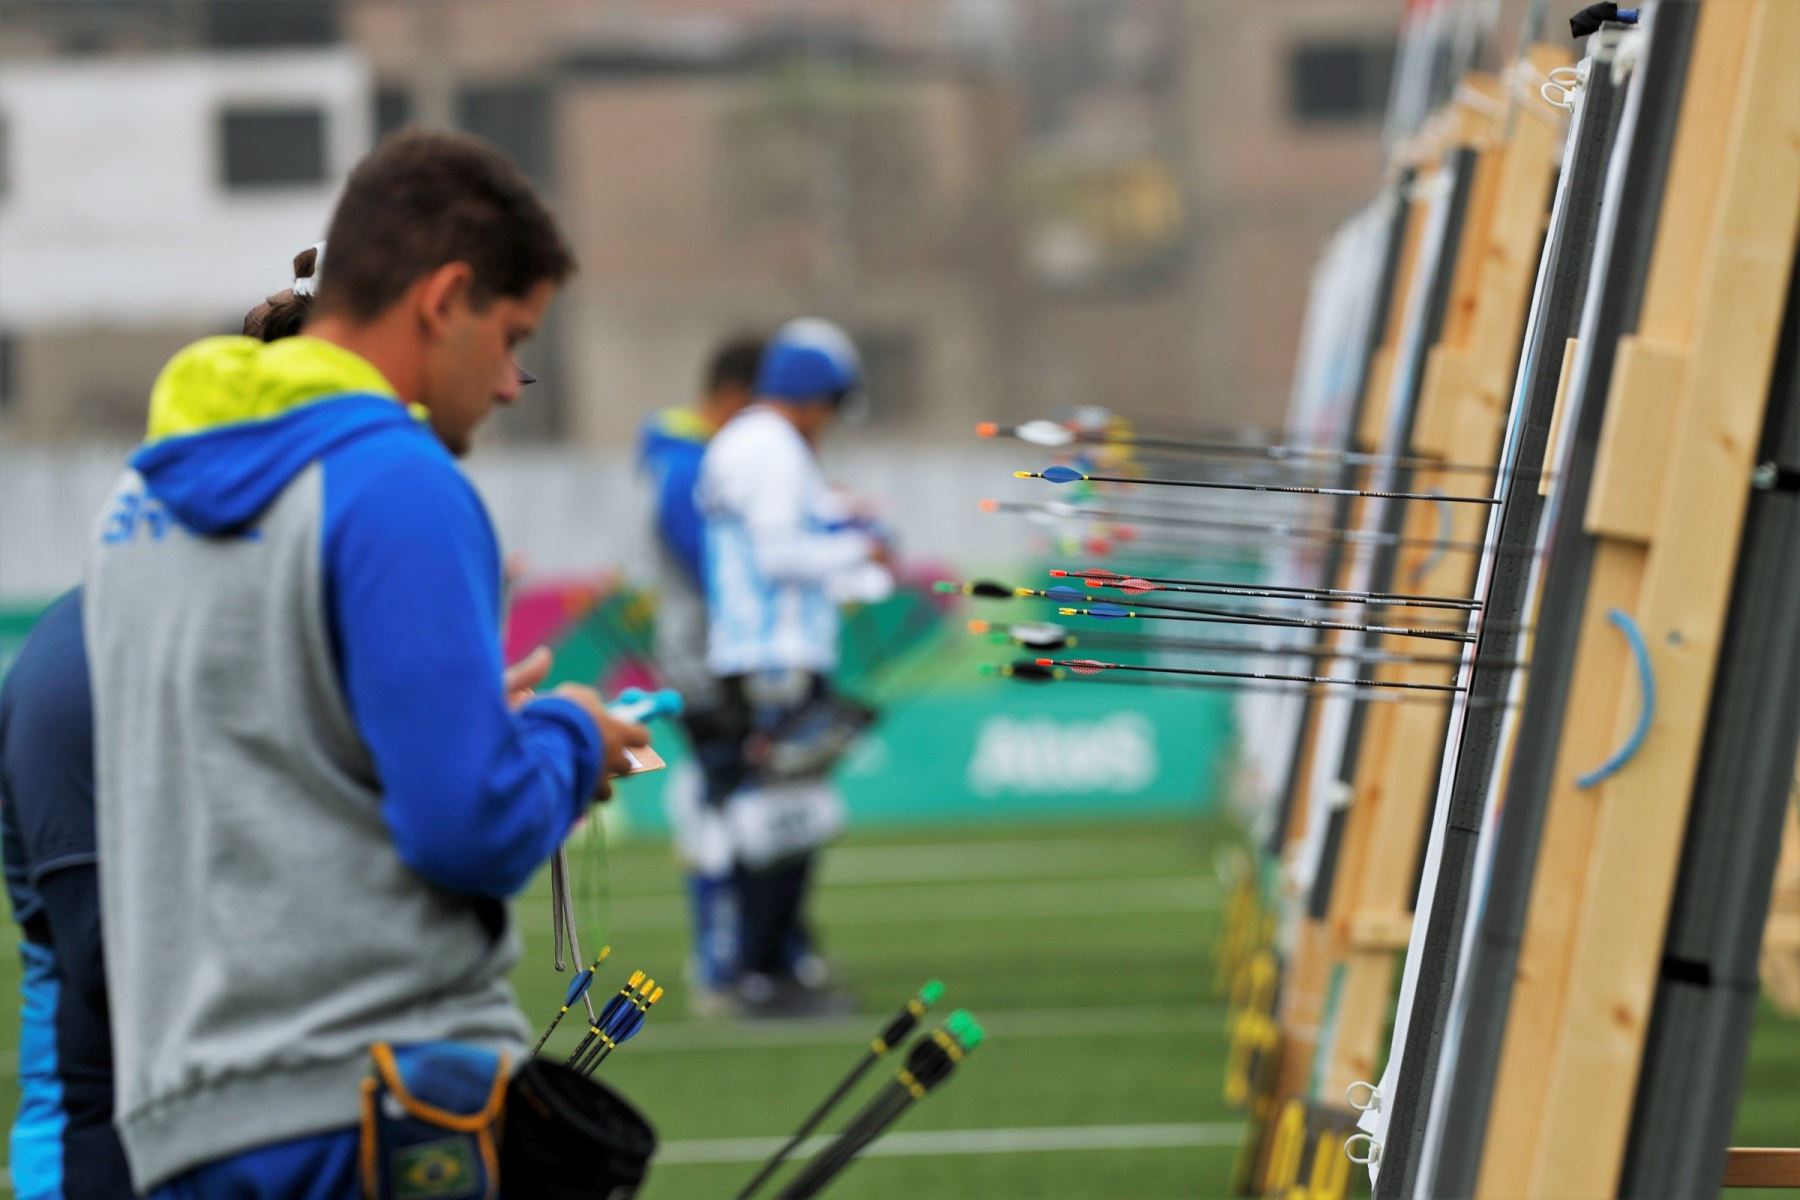 Vista general de la competencia preliminar de Tiro con Arco individual masculino, durante los Juegos Panamericanos Lima 2019. EFE